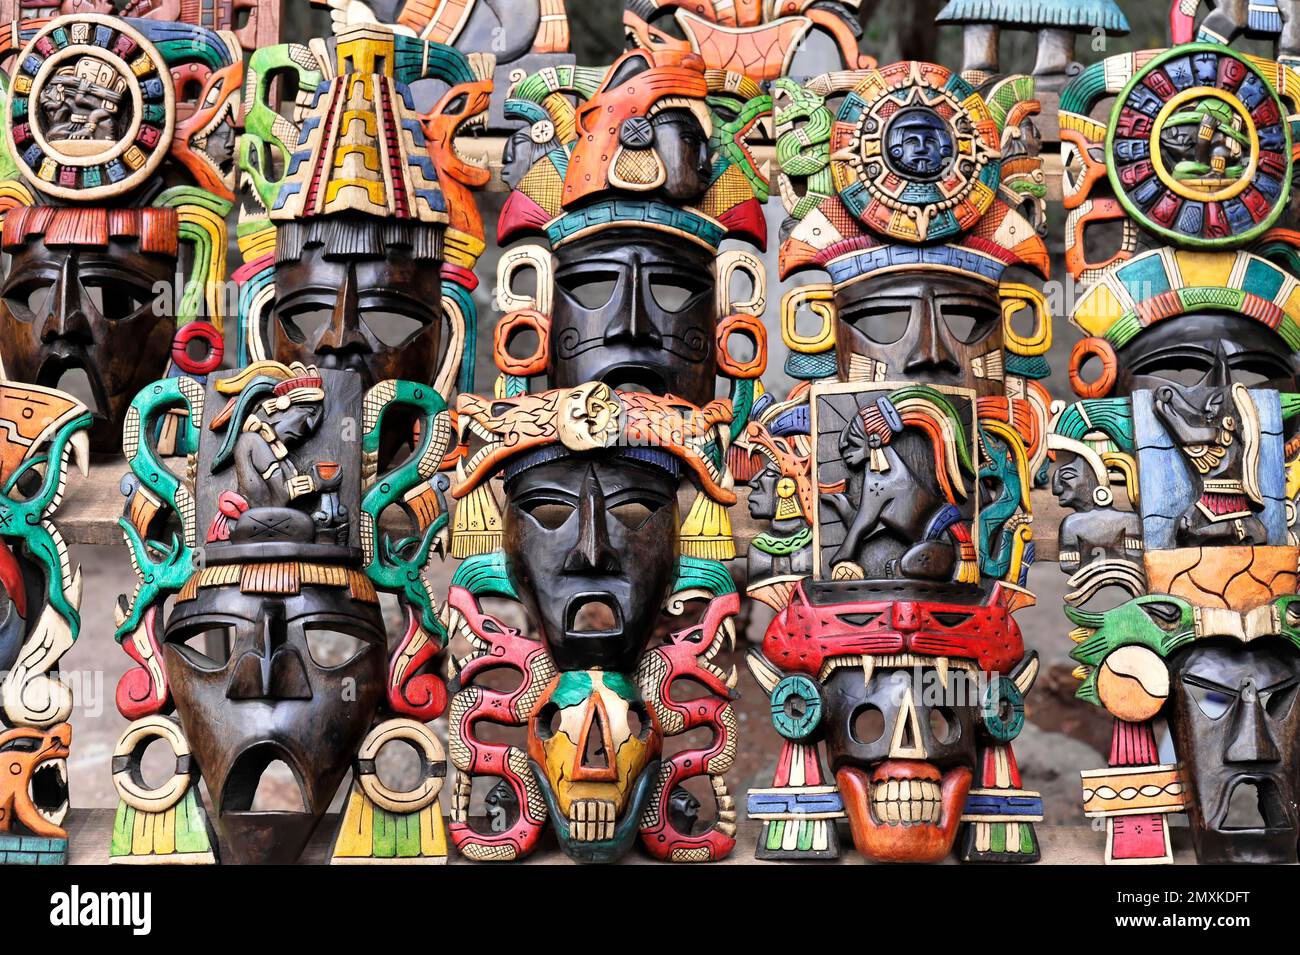 Masken, Kunsthandwerk, Souvenirs, im Eingangsbereich der Maya-Ruinen von Chichén Itzá, Chichén Itzá, Yucatán, Mexiko, Mittelamerika Stockfoto